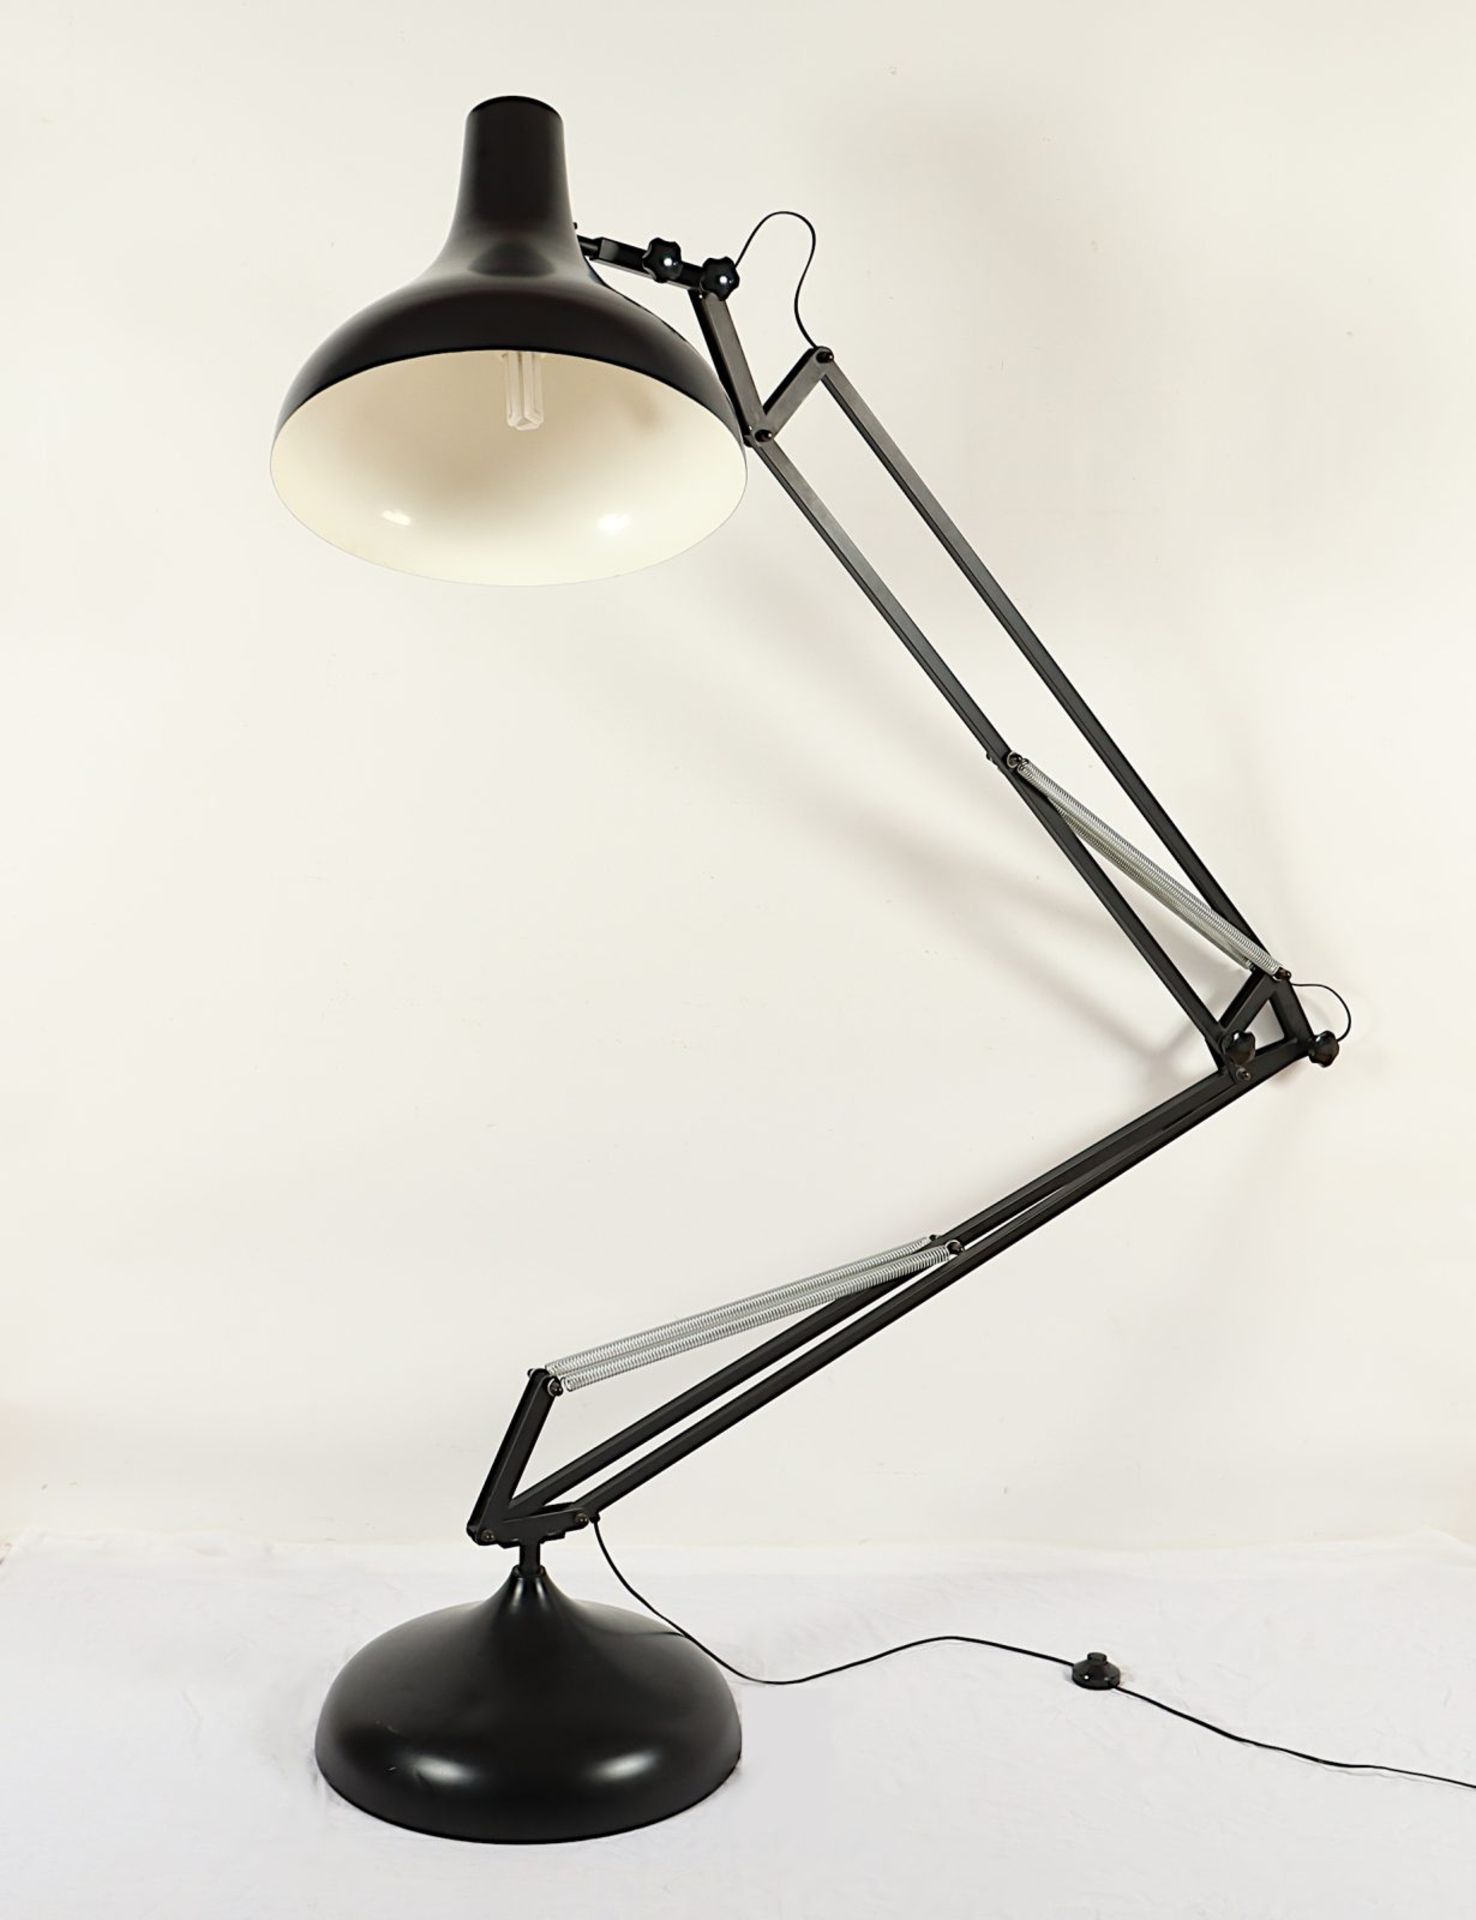 Große Architekten-Stehlampe, H 200 cm, um 1980 - Bild 2 aus 4